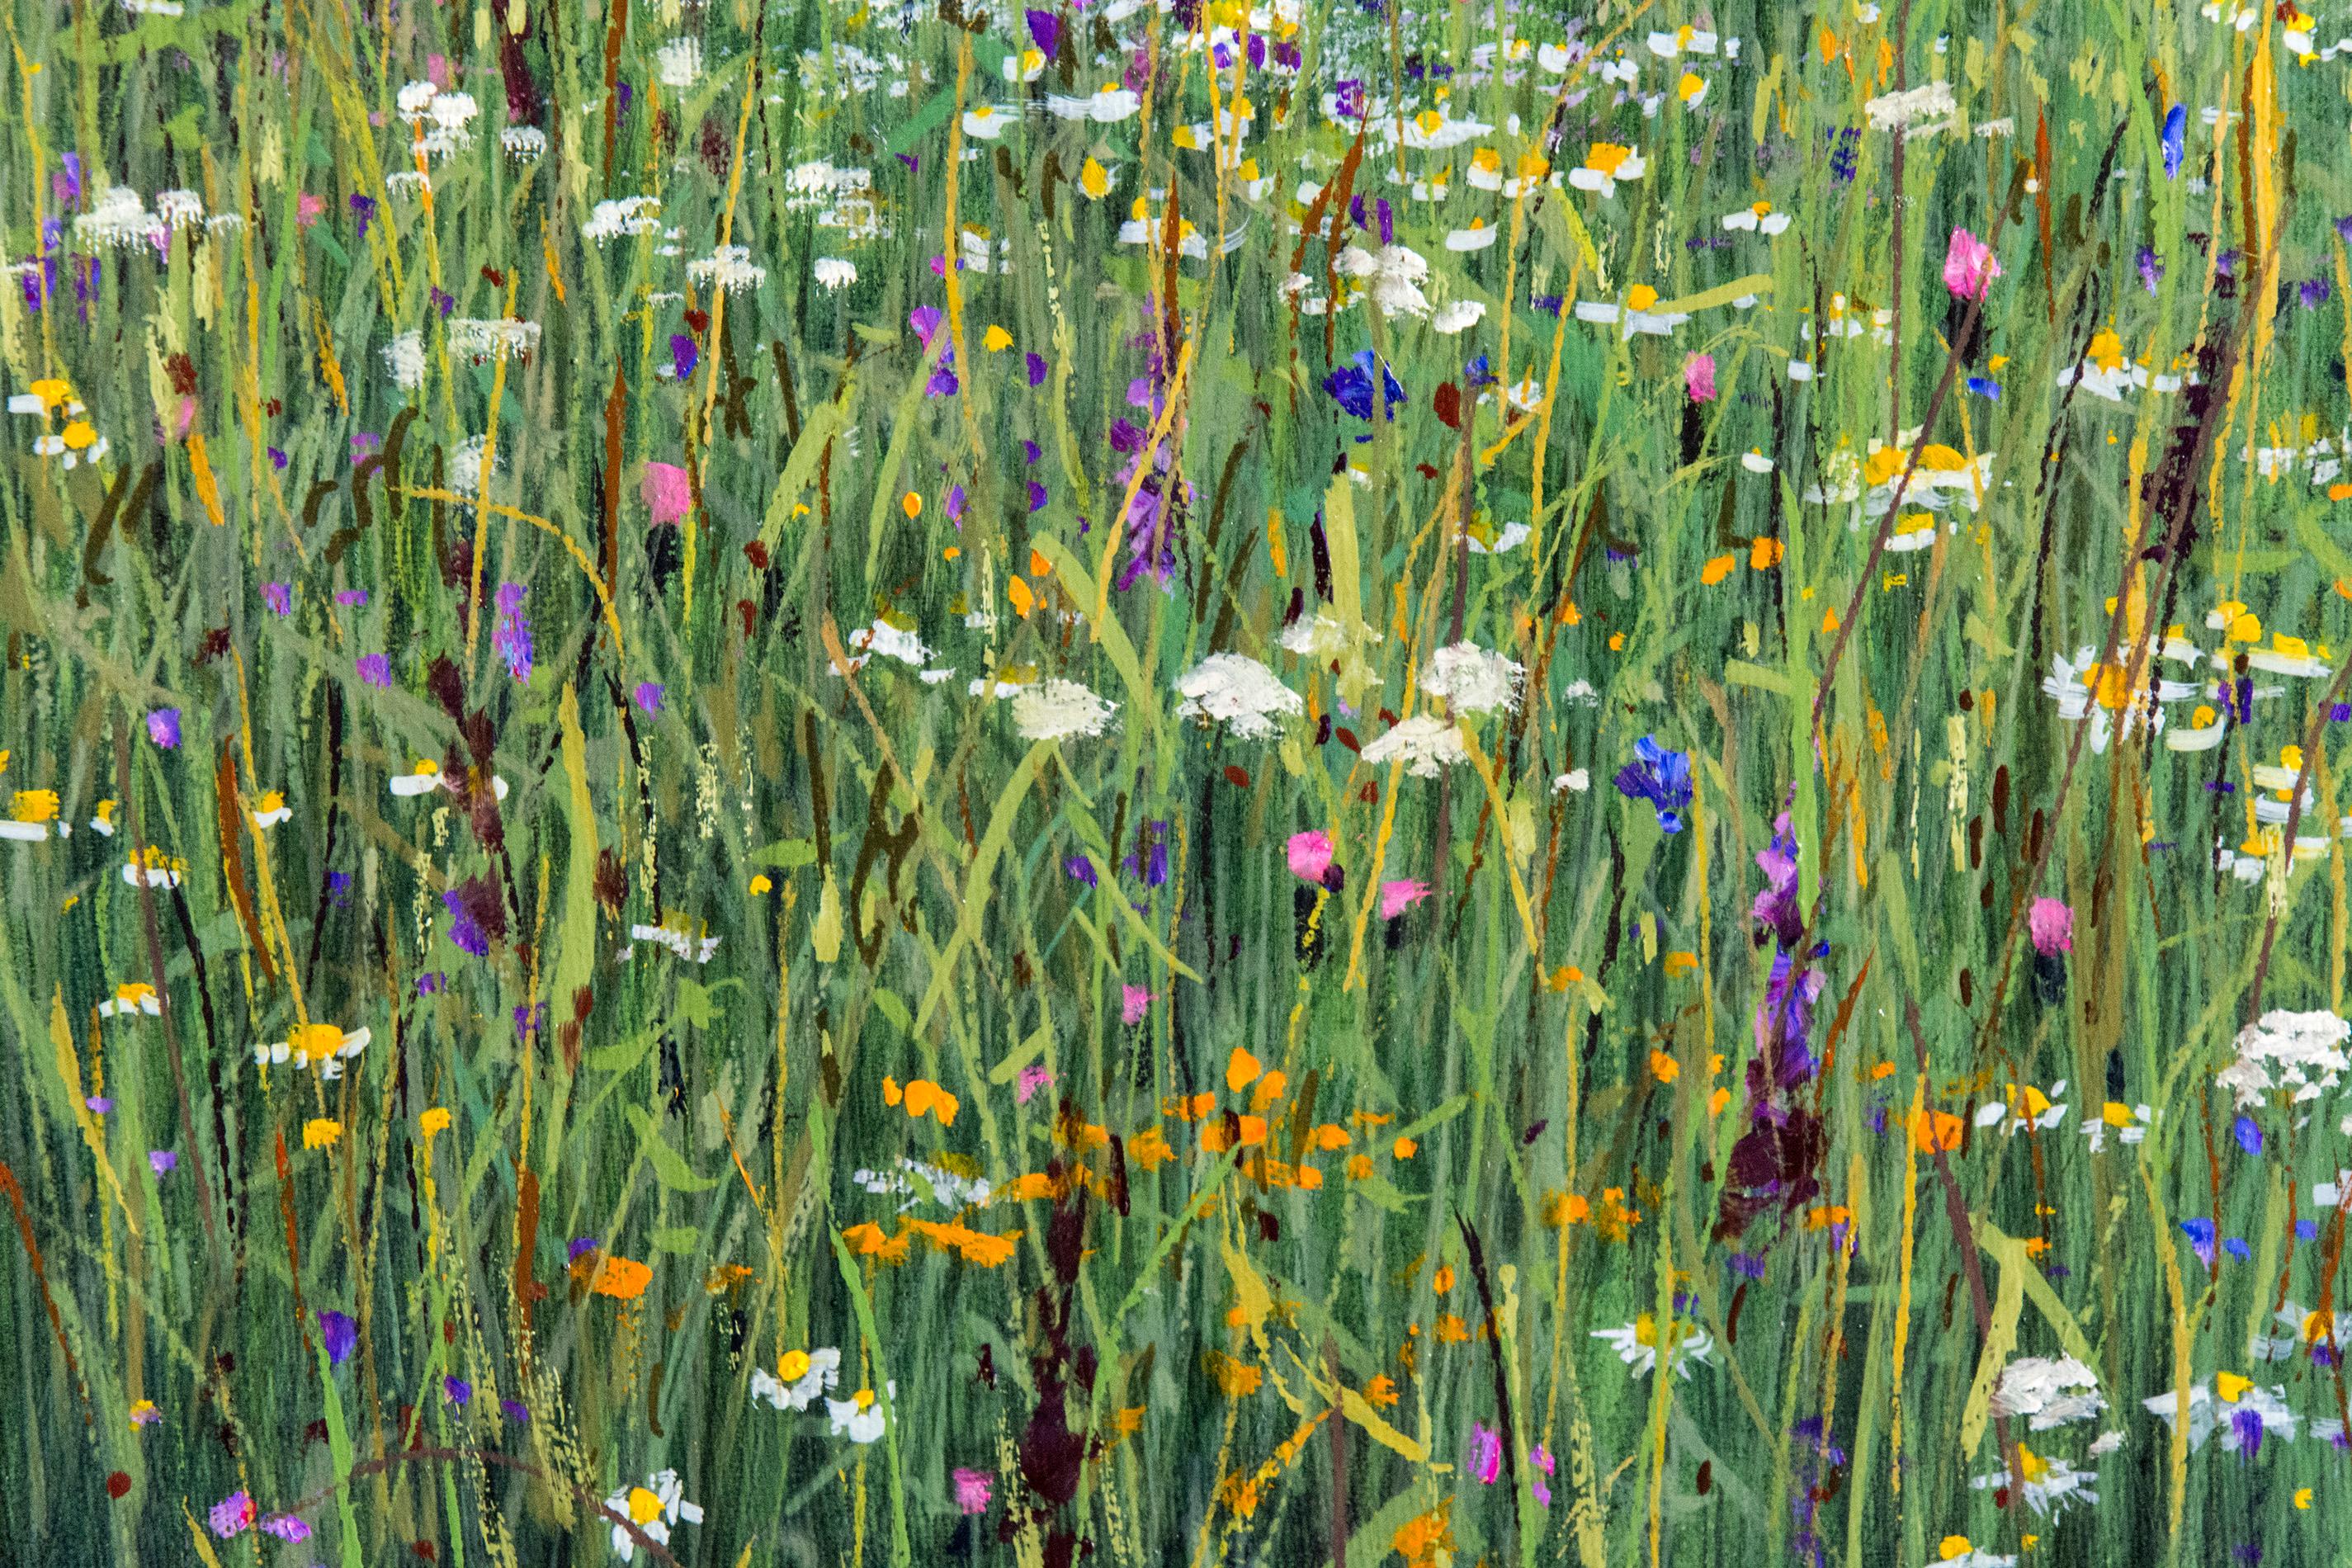 Field at Dusk - Painting by Ciba Karisik